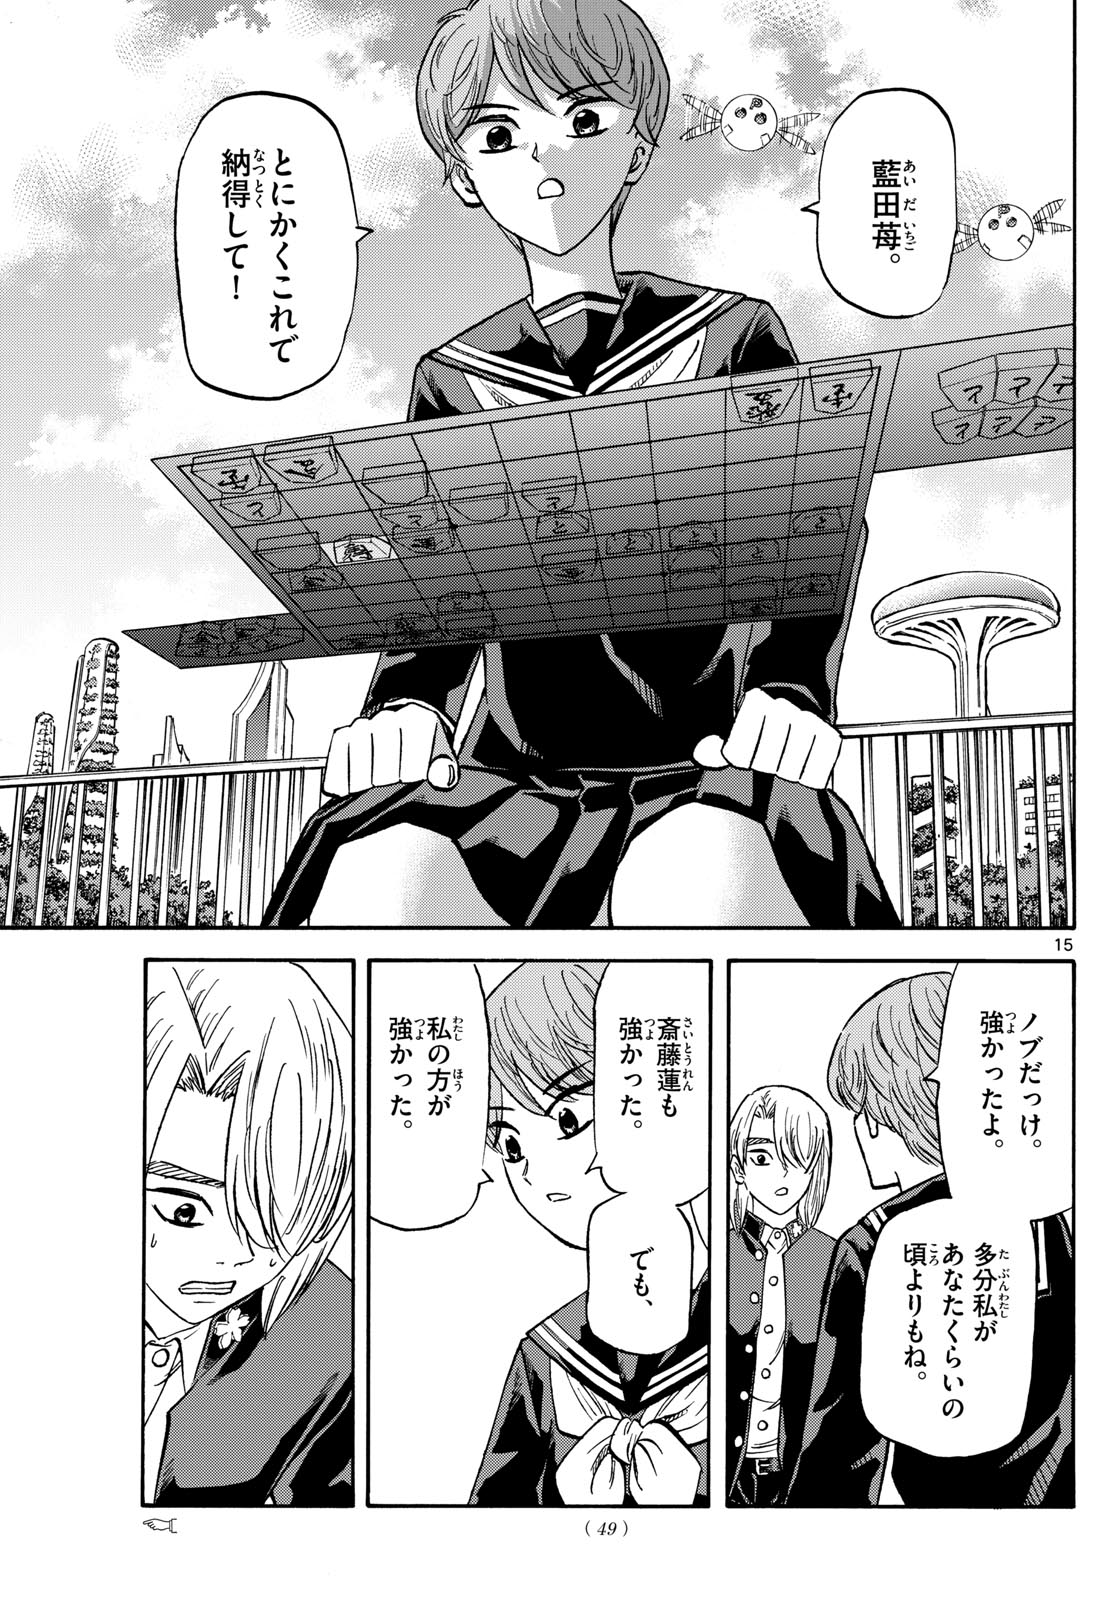 Tatsu to Ichigo - Chapter 187 - Page 15